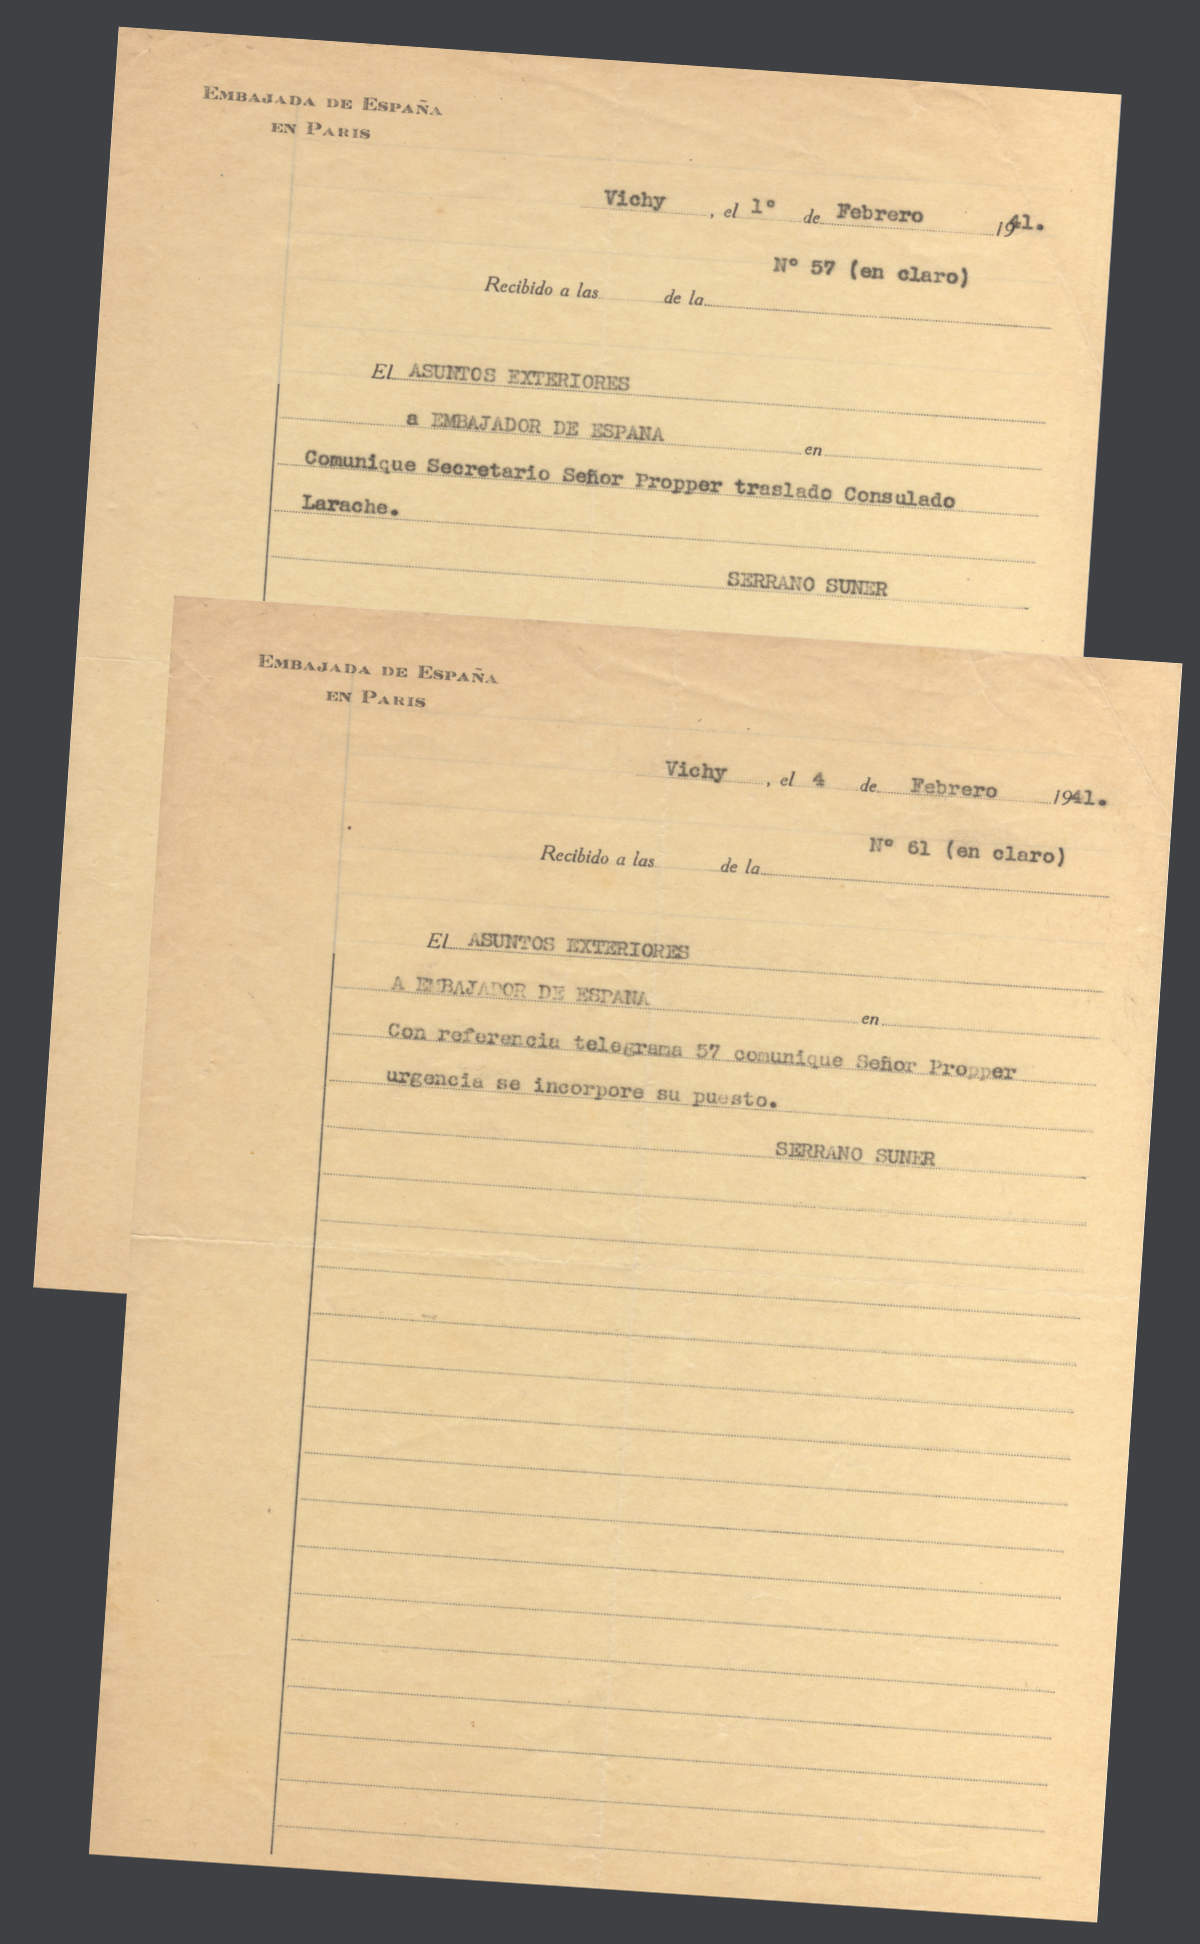 Divas telegrammas no Serrano Sunjera, kas ziņo par Propera pārcelšanu uz Larašu. 